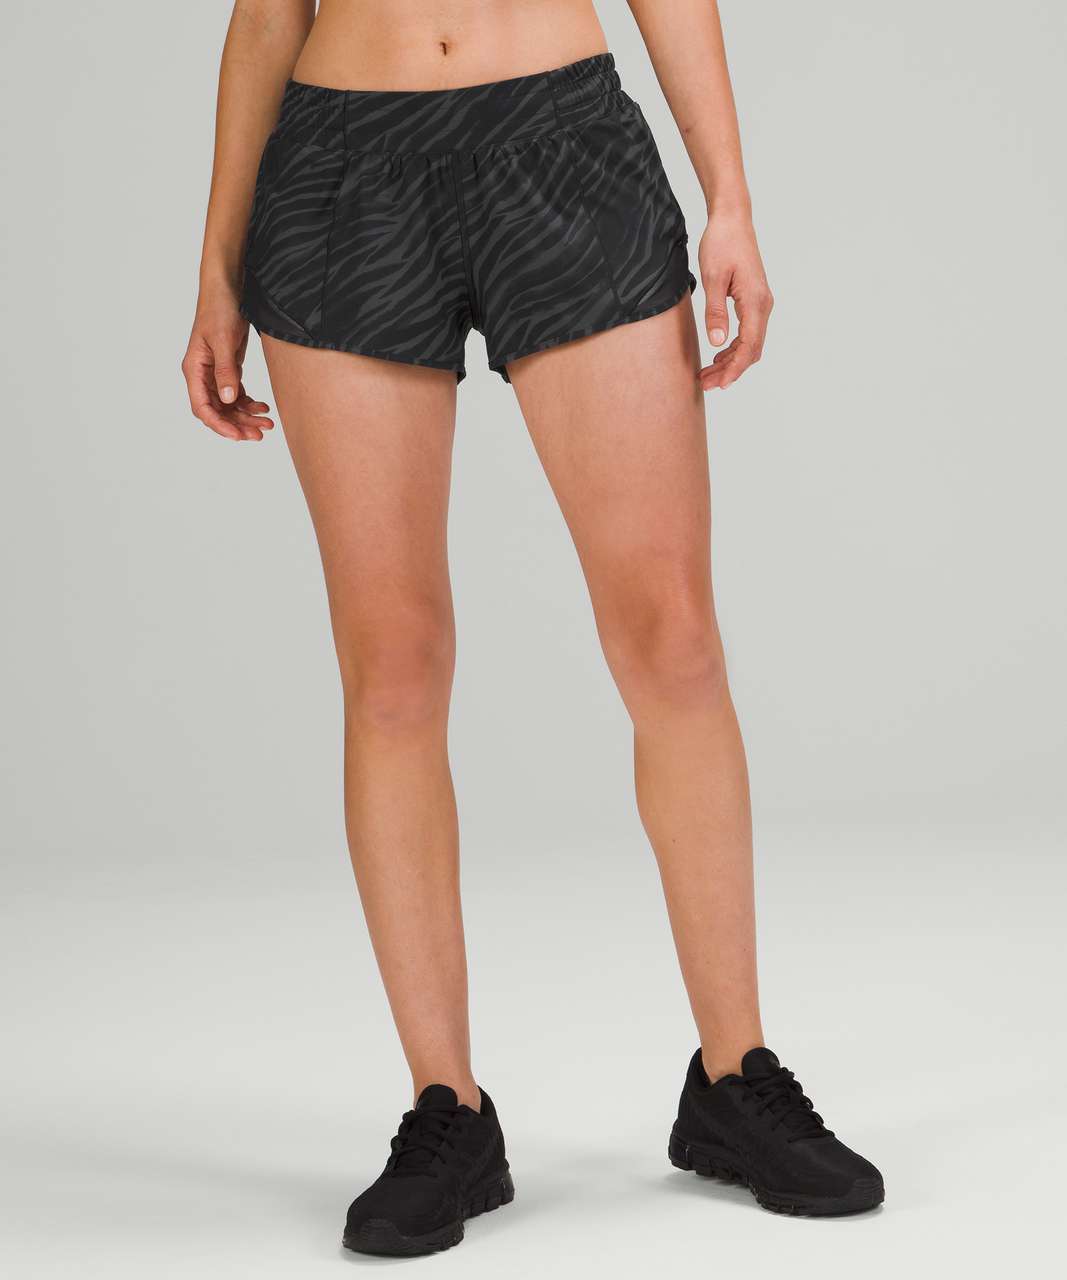 Lululemon Hotty Hot Shorts 3.5” Black sz:4 Rare Retired Style Flawless!